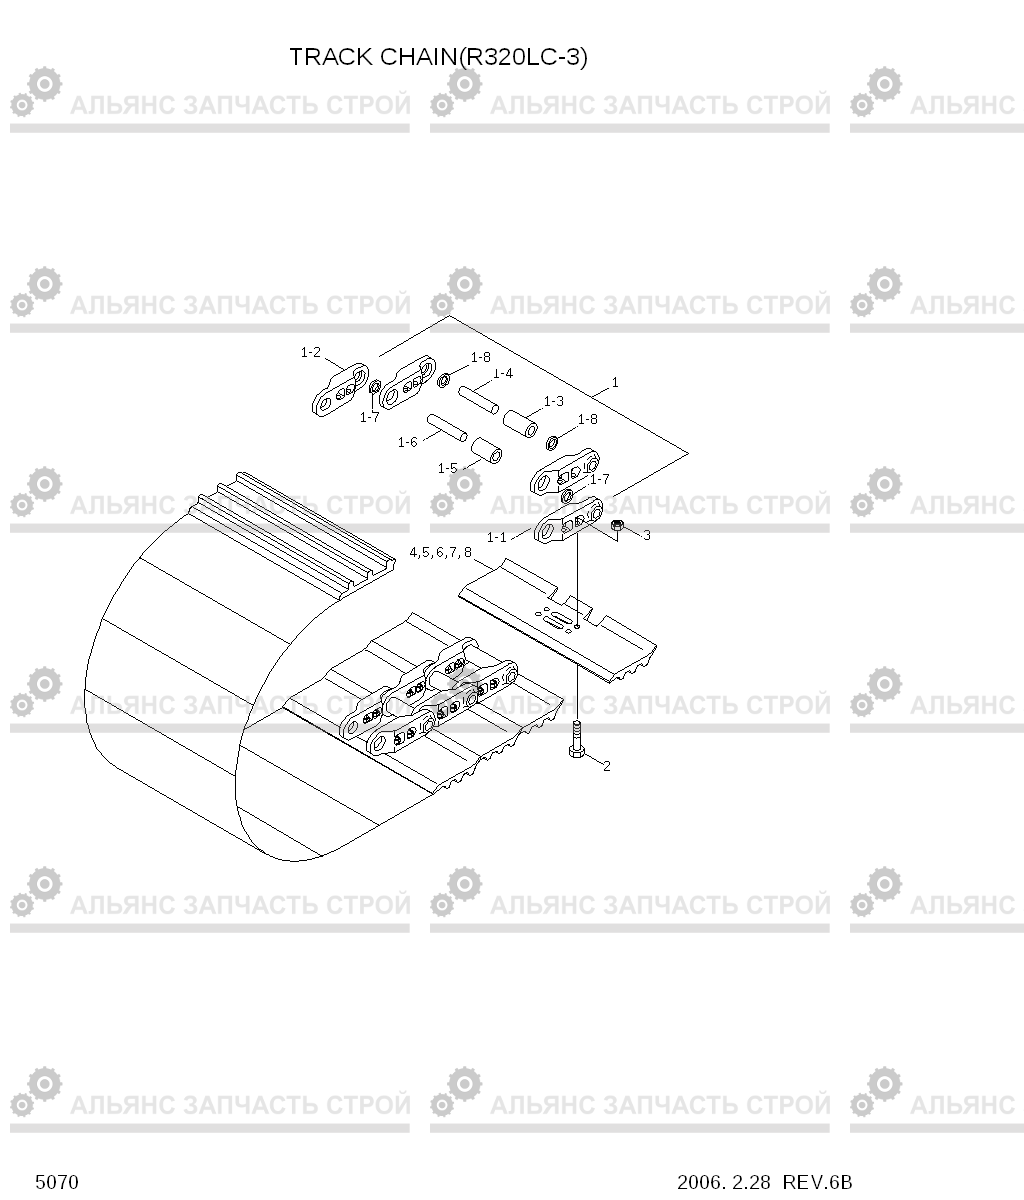 5070 TRACK CHAIN(R320LC-3) R320LC-3, Hyundai